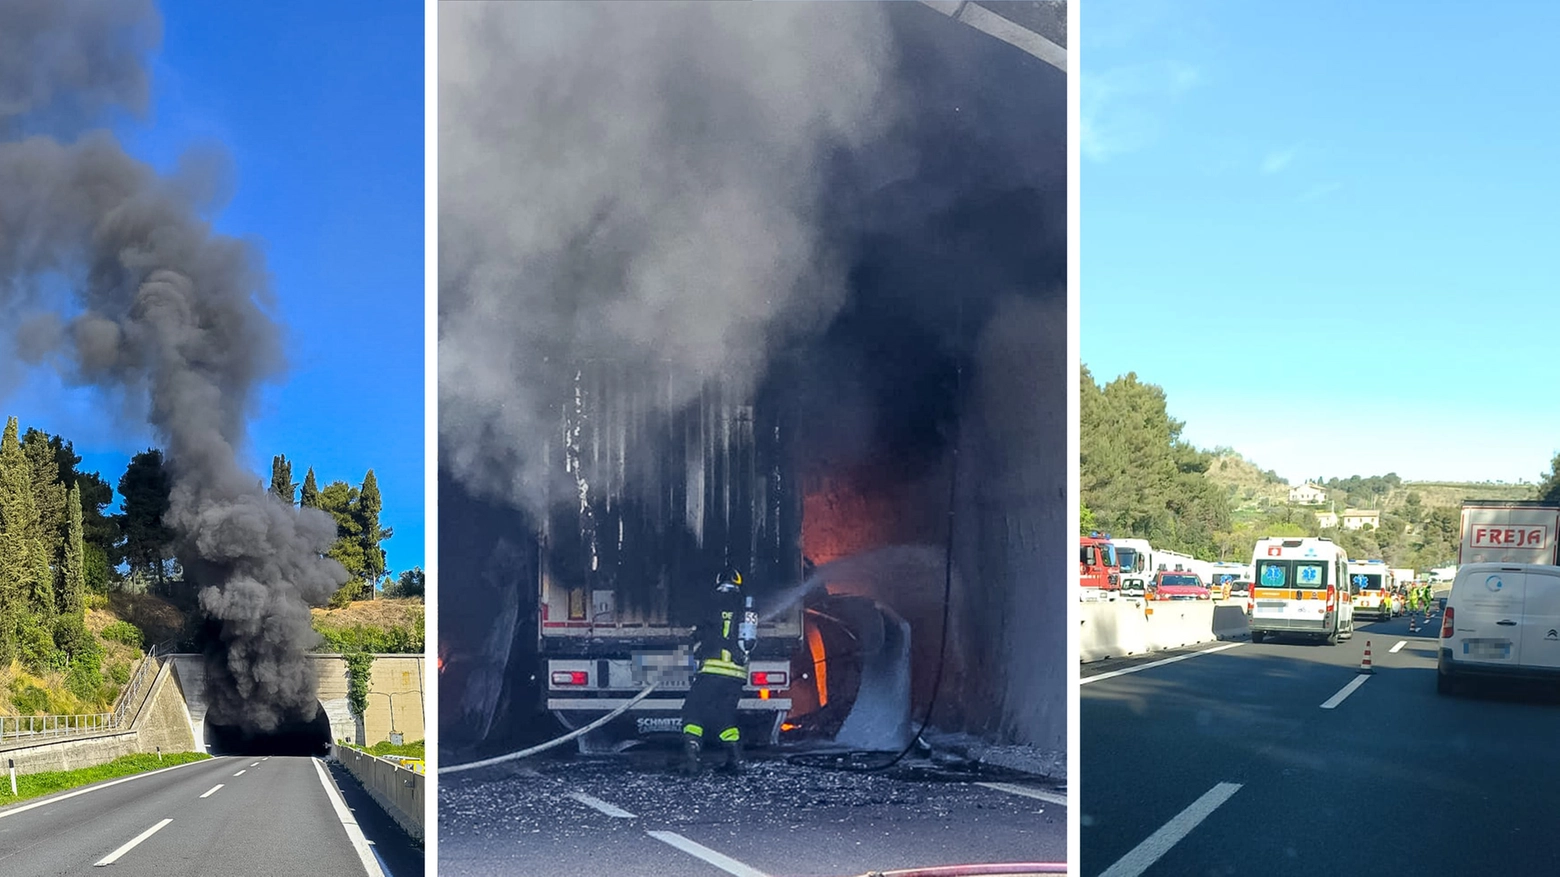 Incidente in A14, camion a fuoco in galleria: un morto e diversi feriti. Traffico paralizzato, caos anche sulla Statale Adriatica